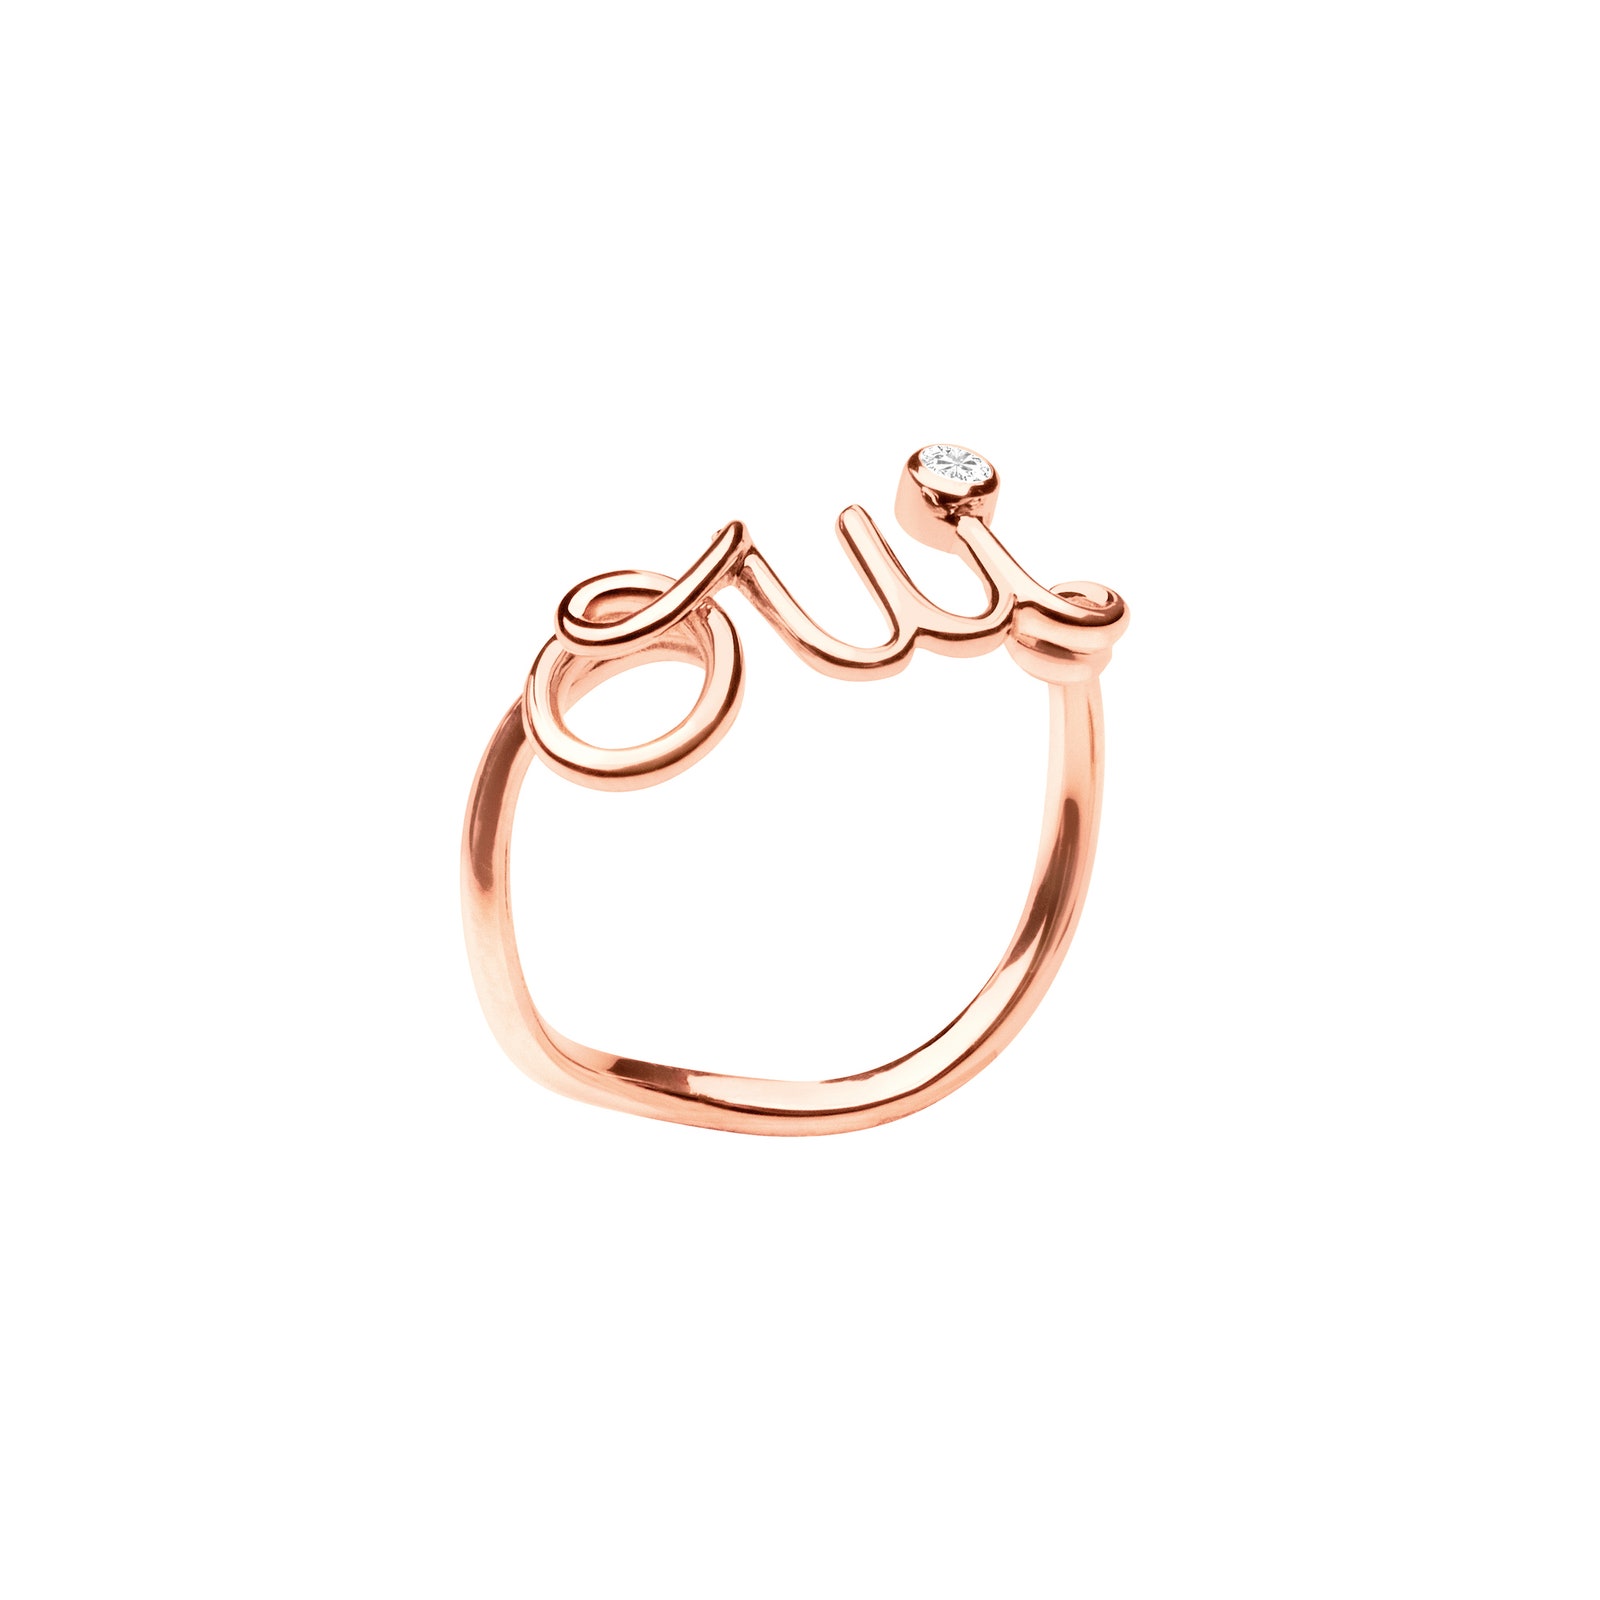 Кольцо и моносерьга Oui от Dior Joaillerie украшения из розового золота с бриллиантом